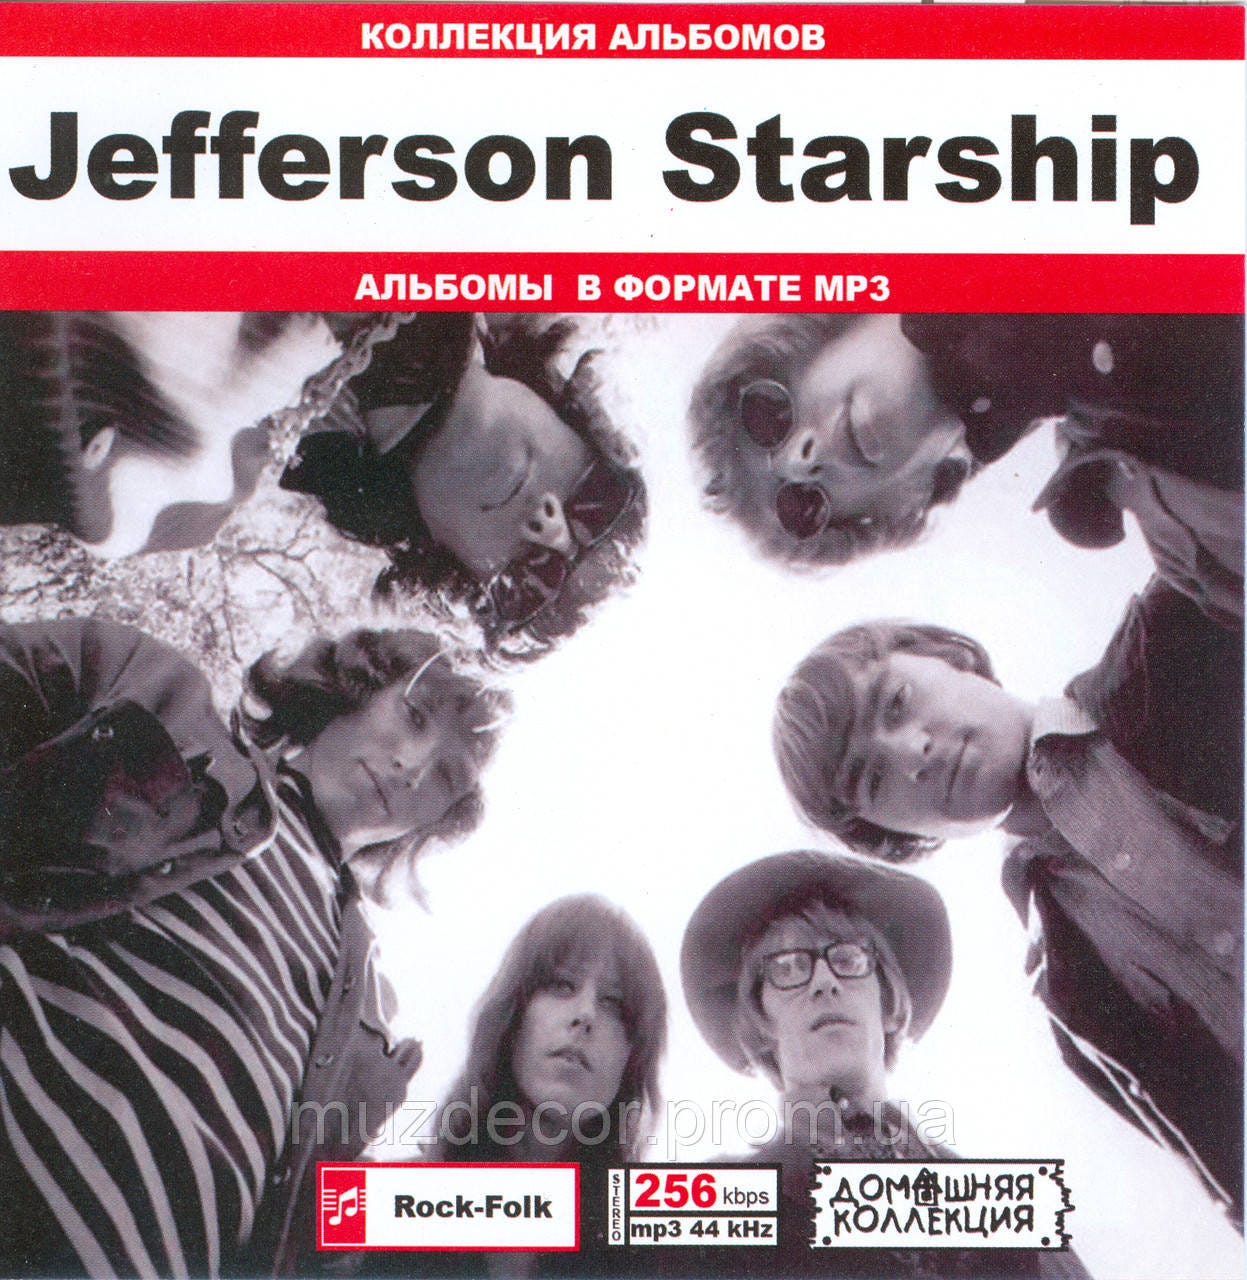 JEFFERSON STARSHIP MP3 — Купить Недорого на Bigl.ua (1356518446)